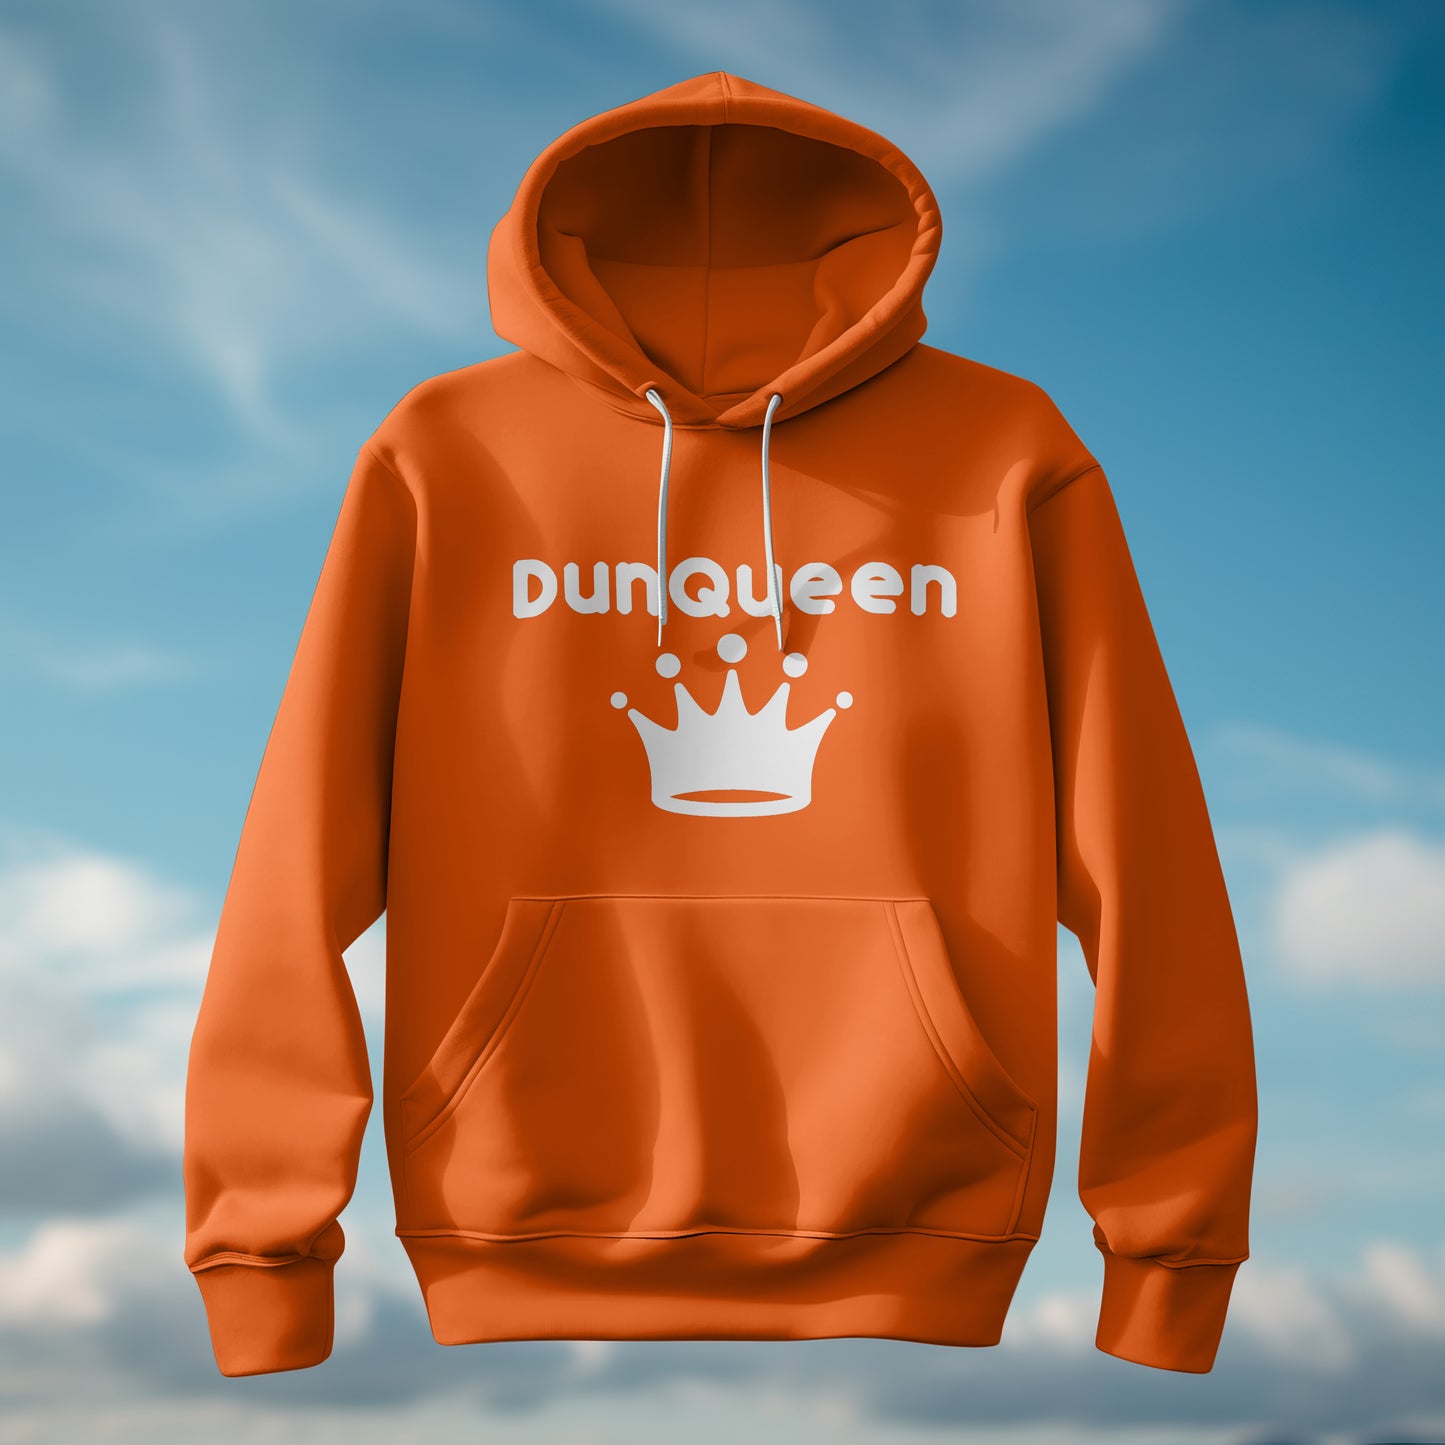 DunQueen Shirt